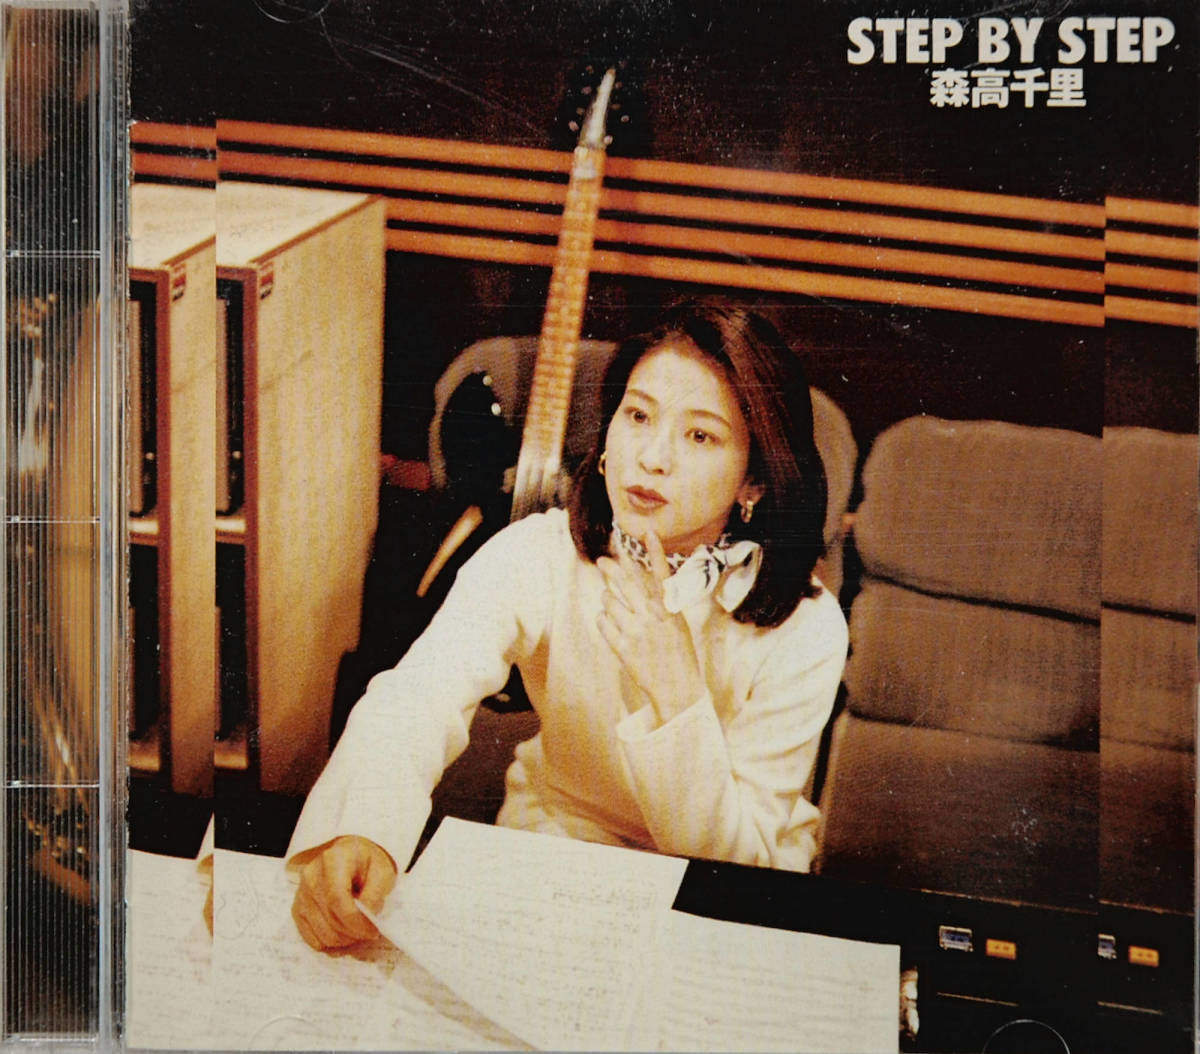 ♪森高千里「STEP BY STEP」CD♪－日本代購代Bid第一推介「Funbid」